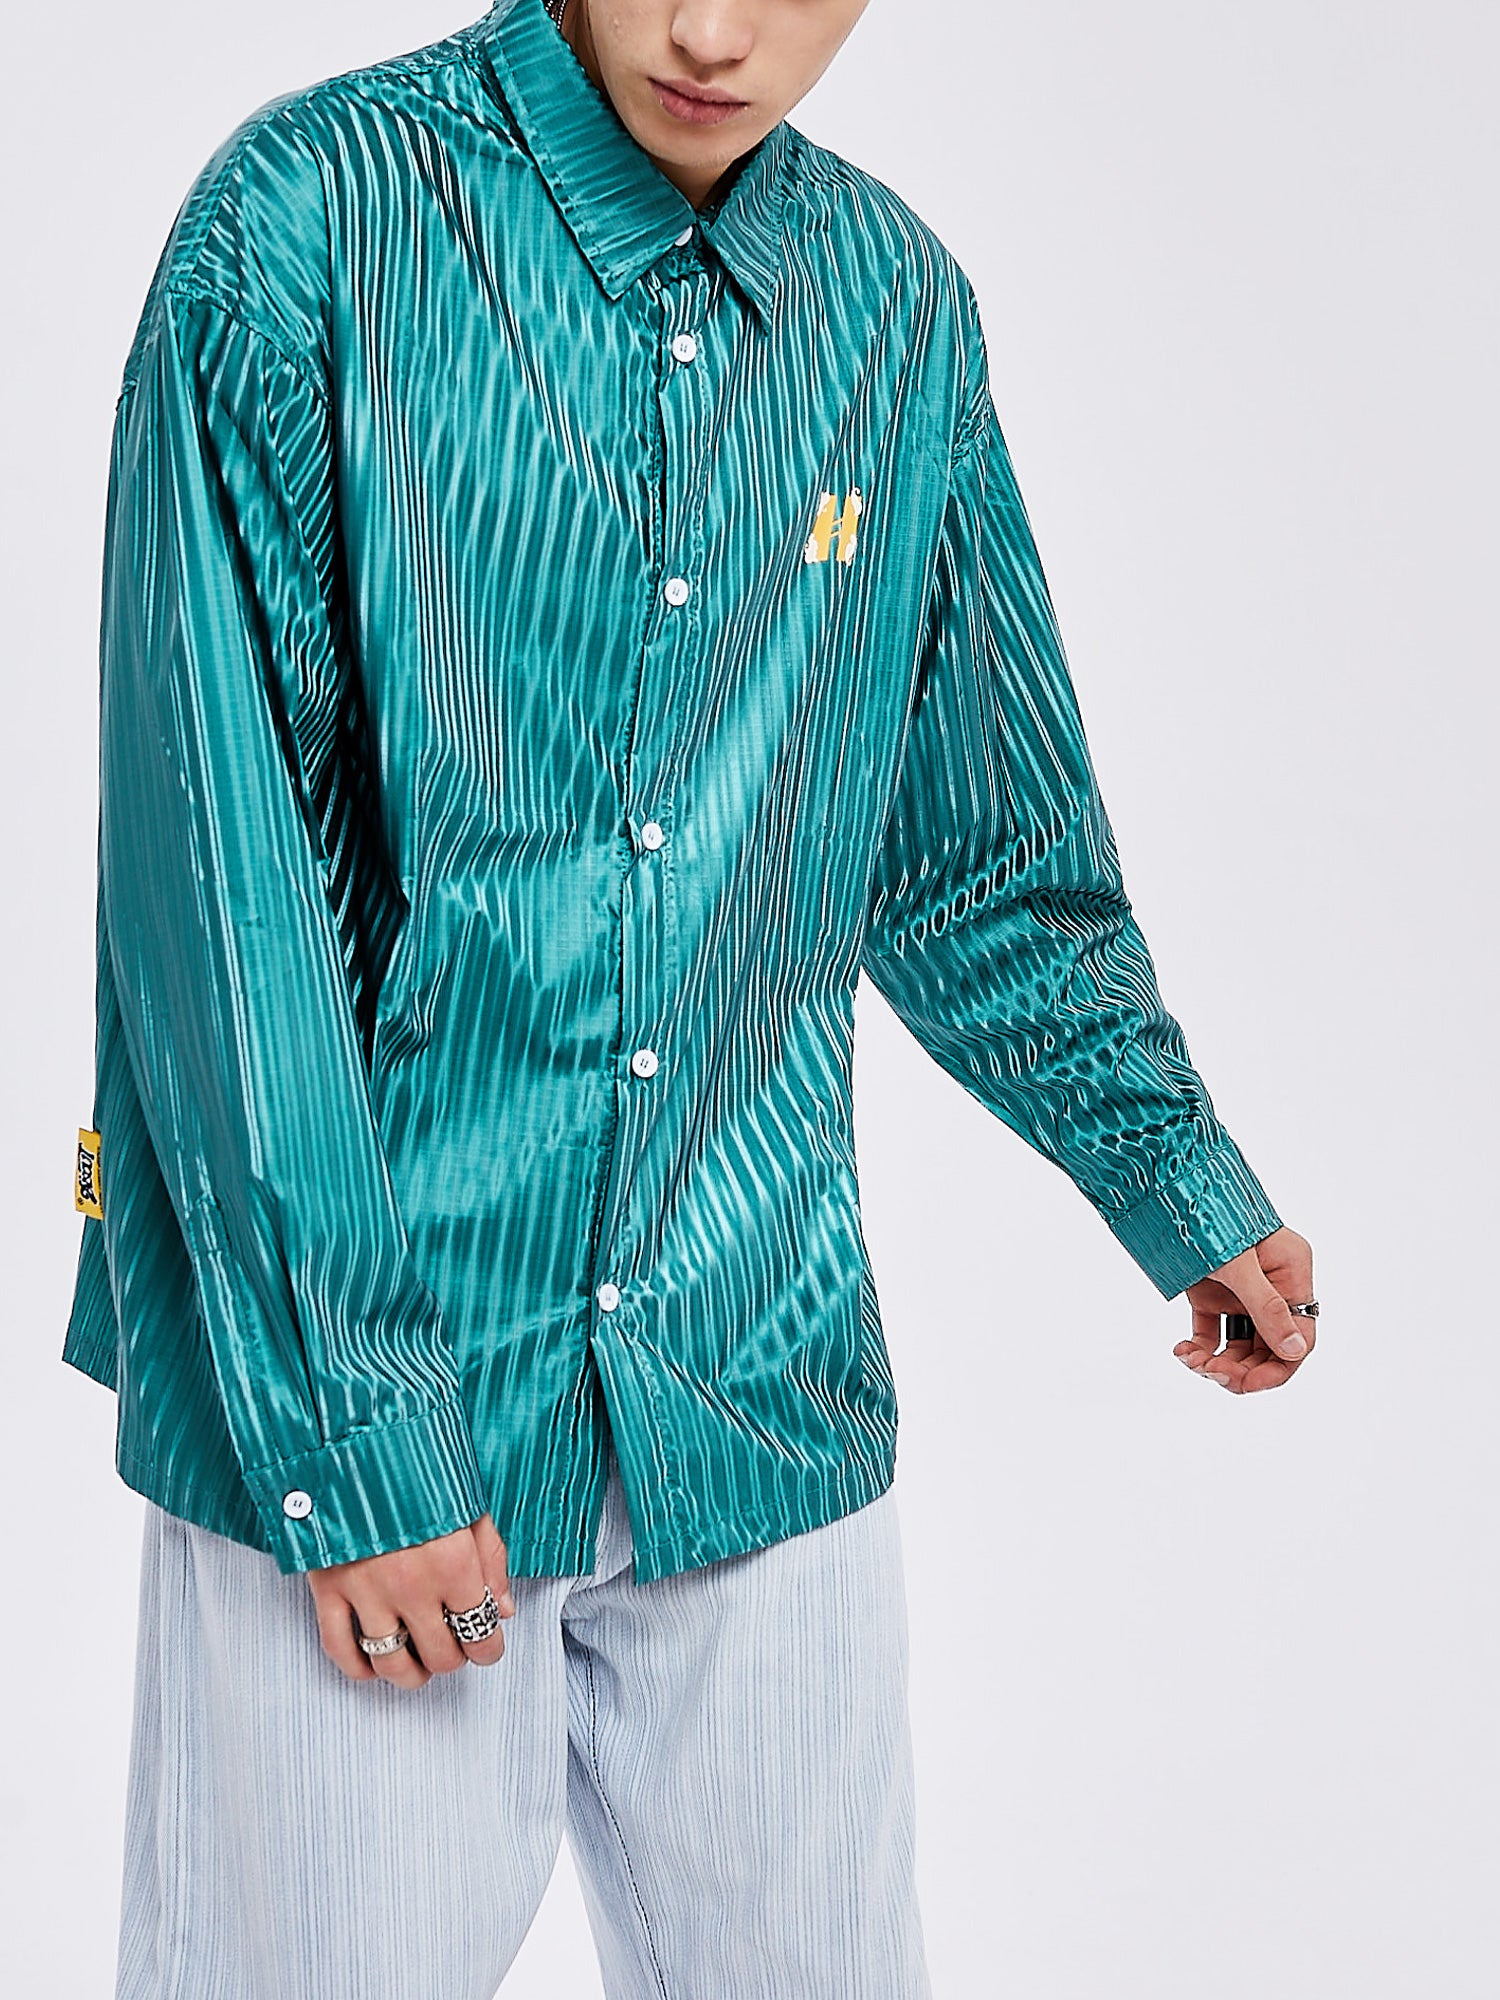 JUSTNOTAG Street Fashion Hiphop Striped Polyester Umlegekragen Grüne Hemden